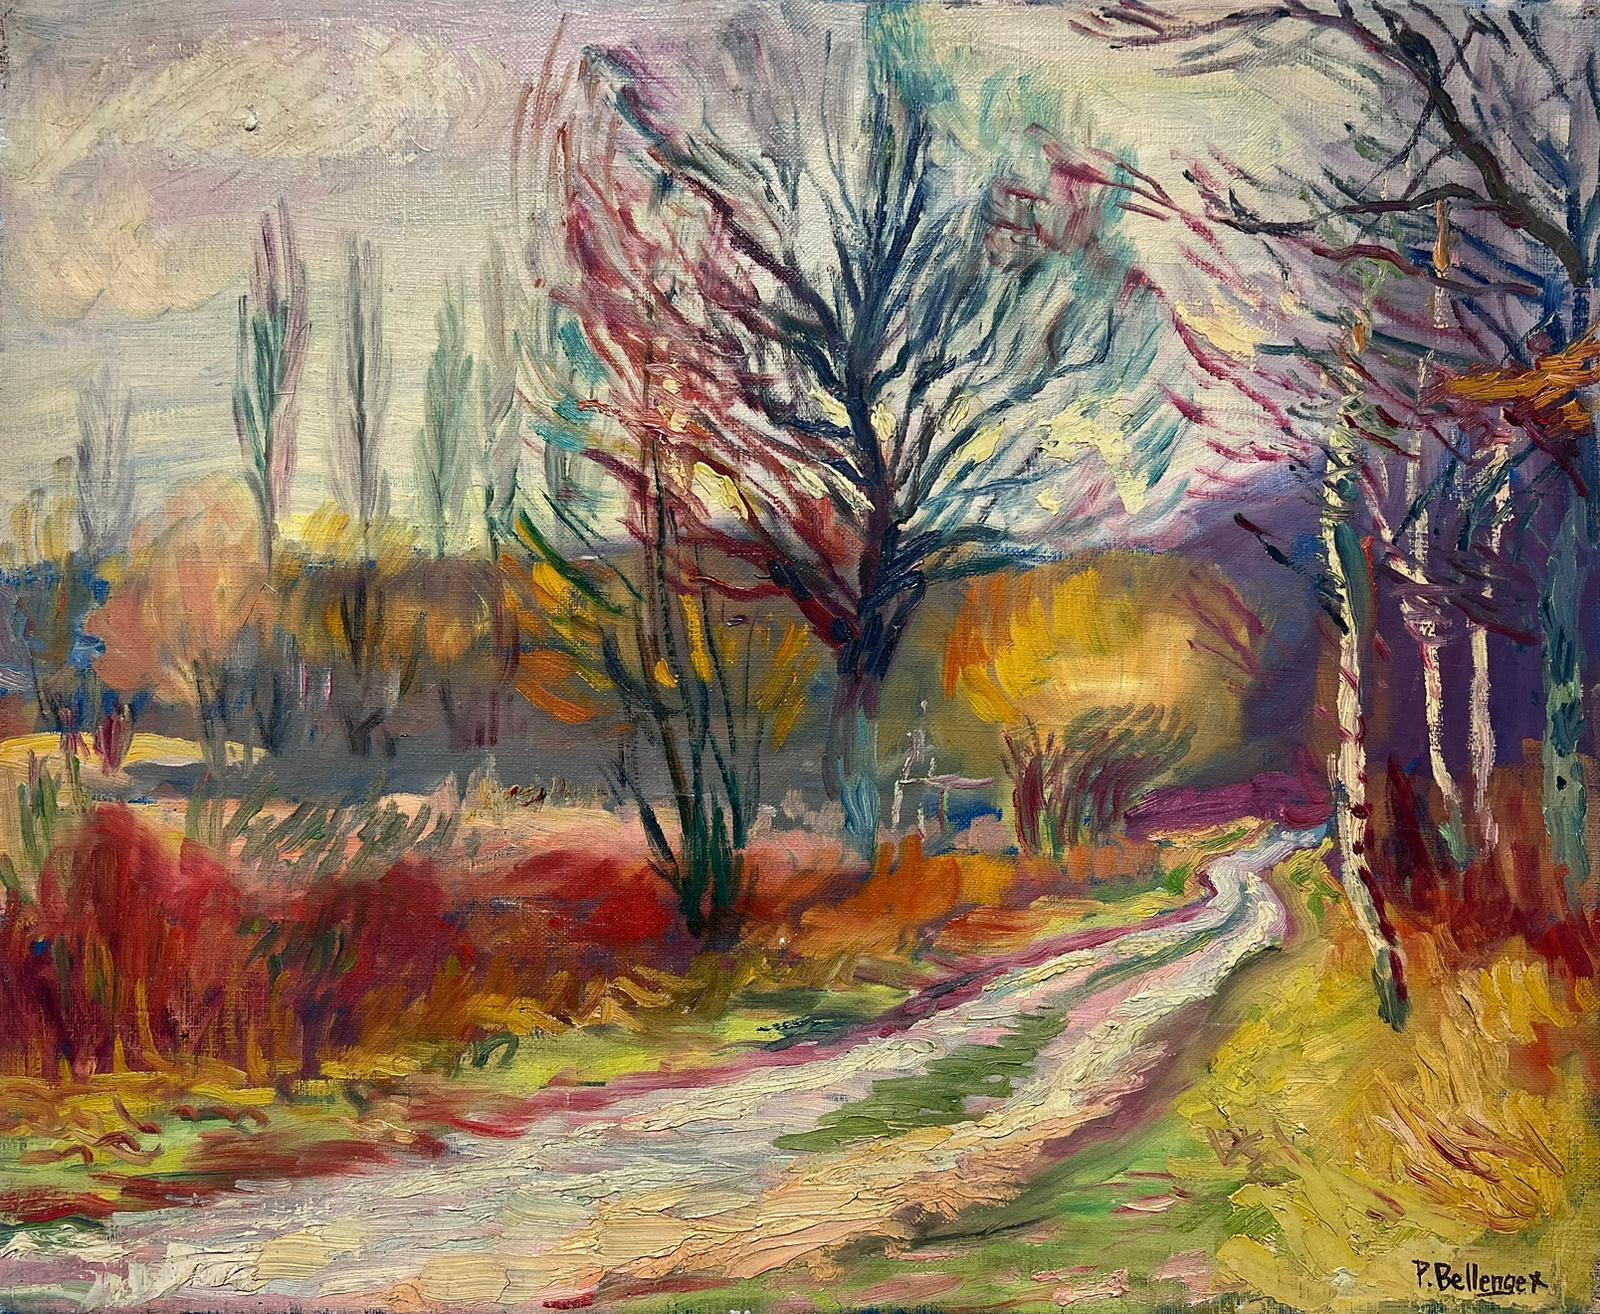 P. Bellenger (French Impressionist) Landscape Painting - 20th Century French Impressionist Oil Painting Autumnal Landscape Large Canvas